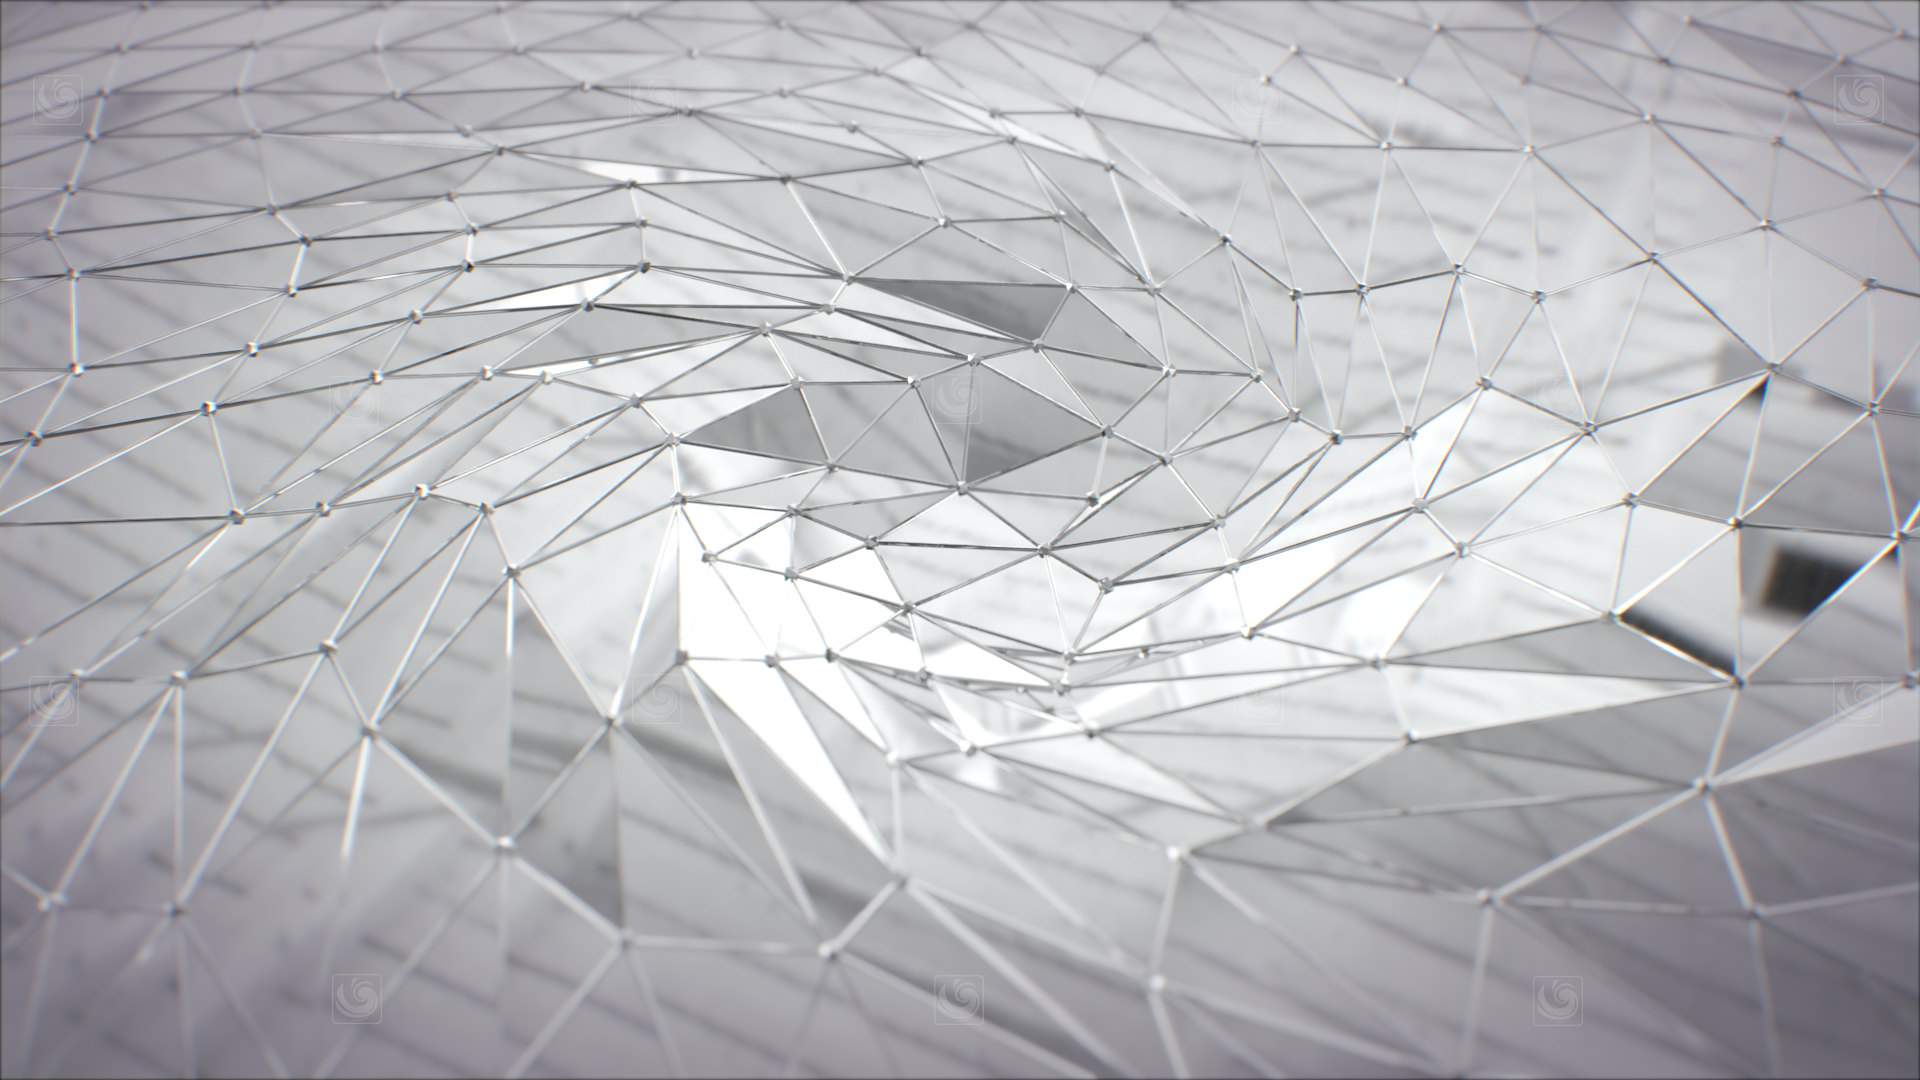 Fotograma de animación 3D mostrando un torbellino de aspecto digital